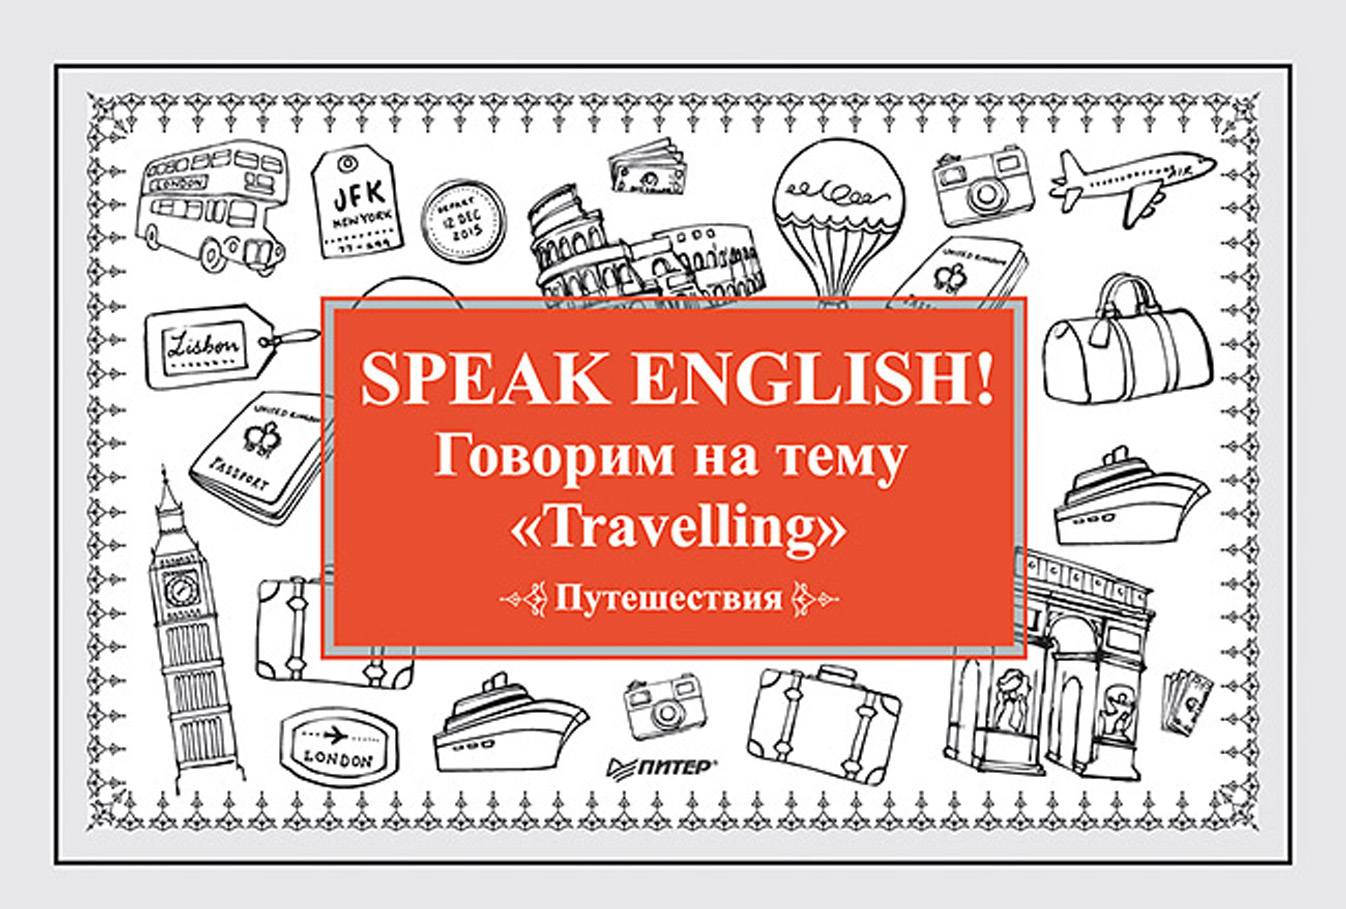 Speak English!Говорим на тему «Travelling» (Путешествия)